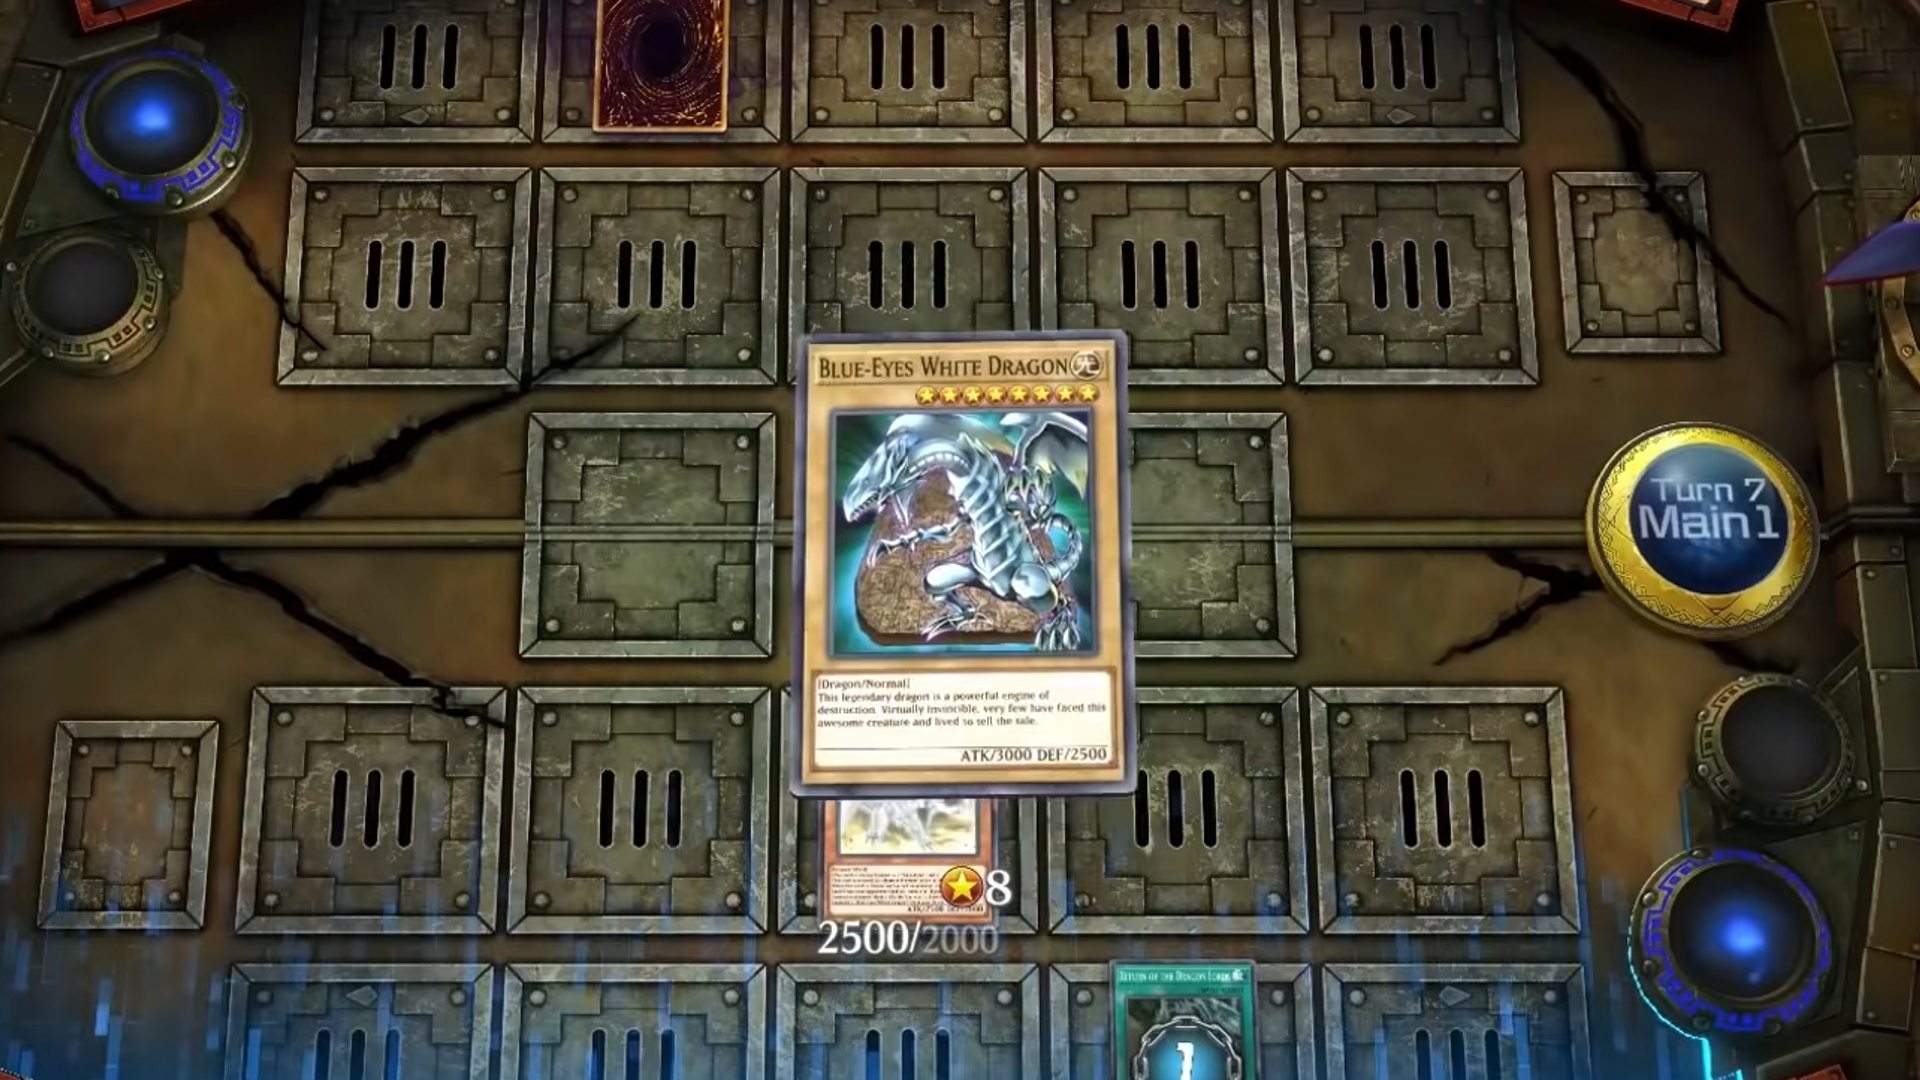 Blue Eyes White Dragon -kortet er plassert på slagmarken i en yugioh -duell